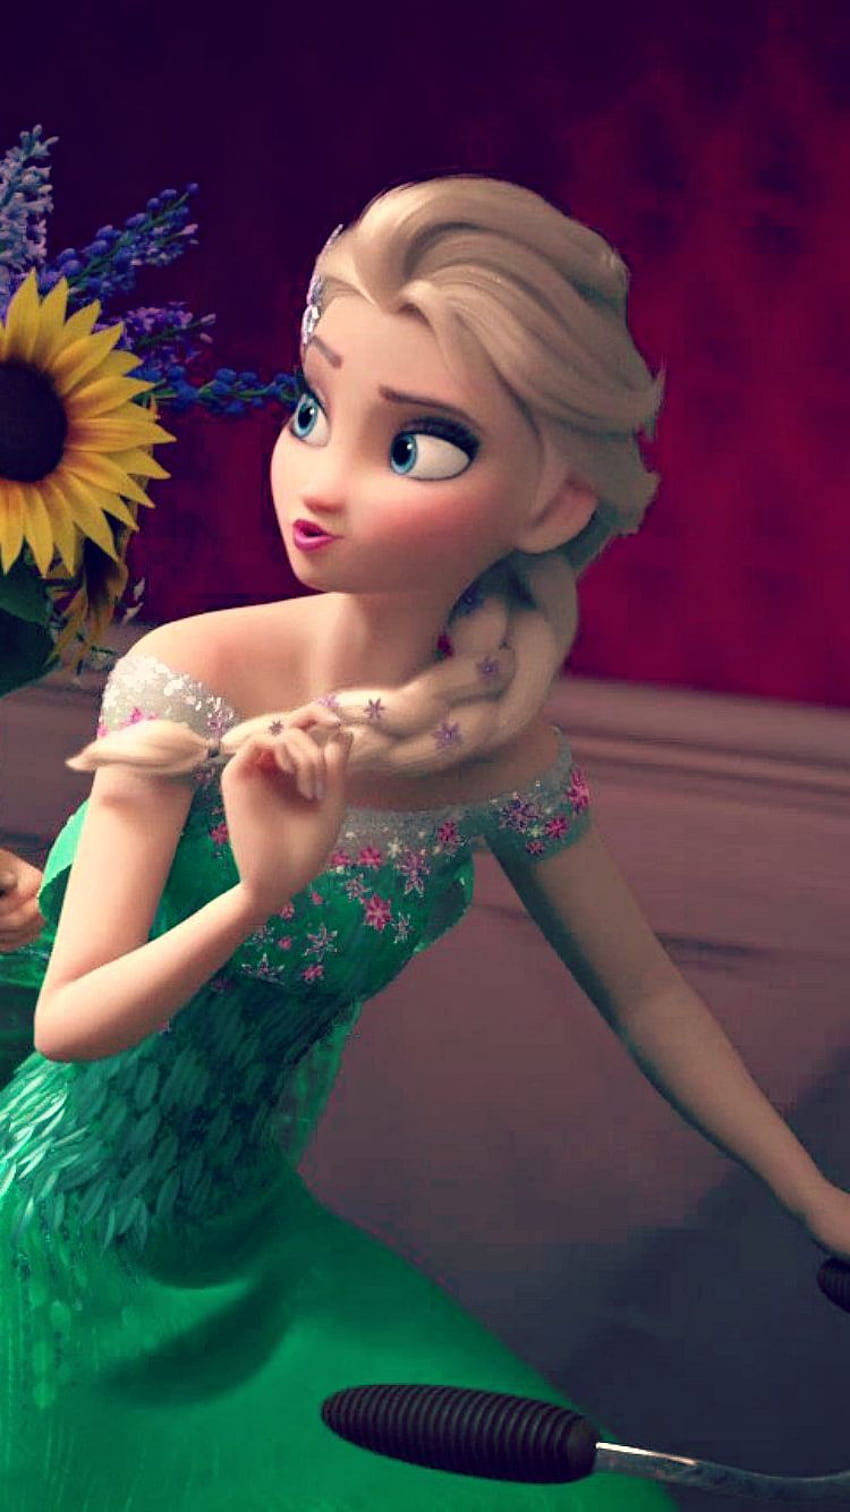 Queen Of Frozen Arendelle. Frozen Fever Elsa, Disney Frozen HD phone wallpaper